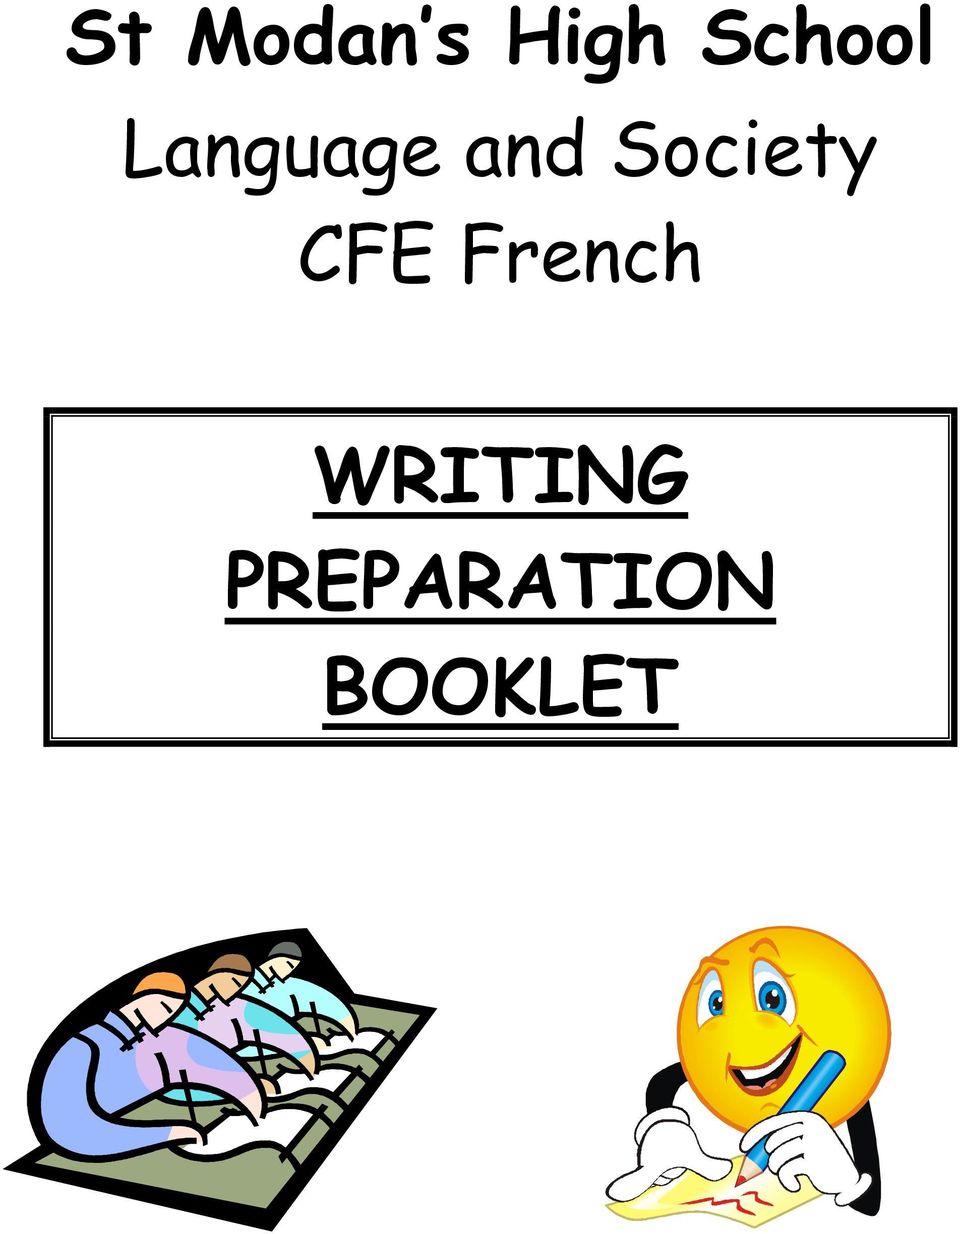 Society CFE French